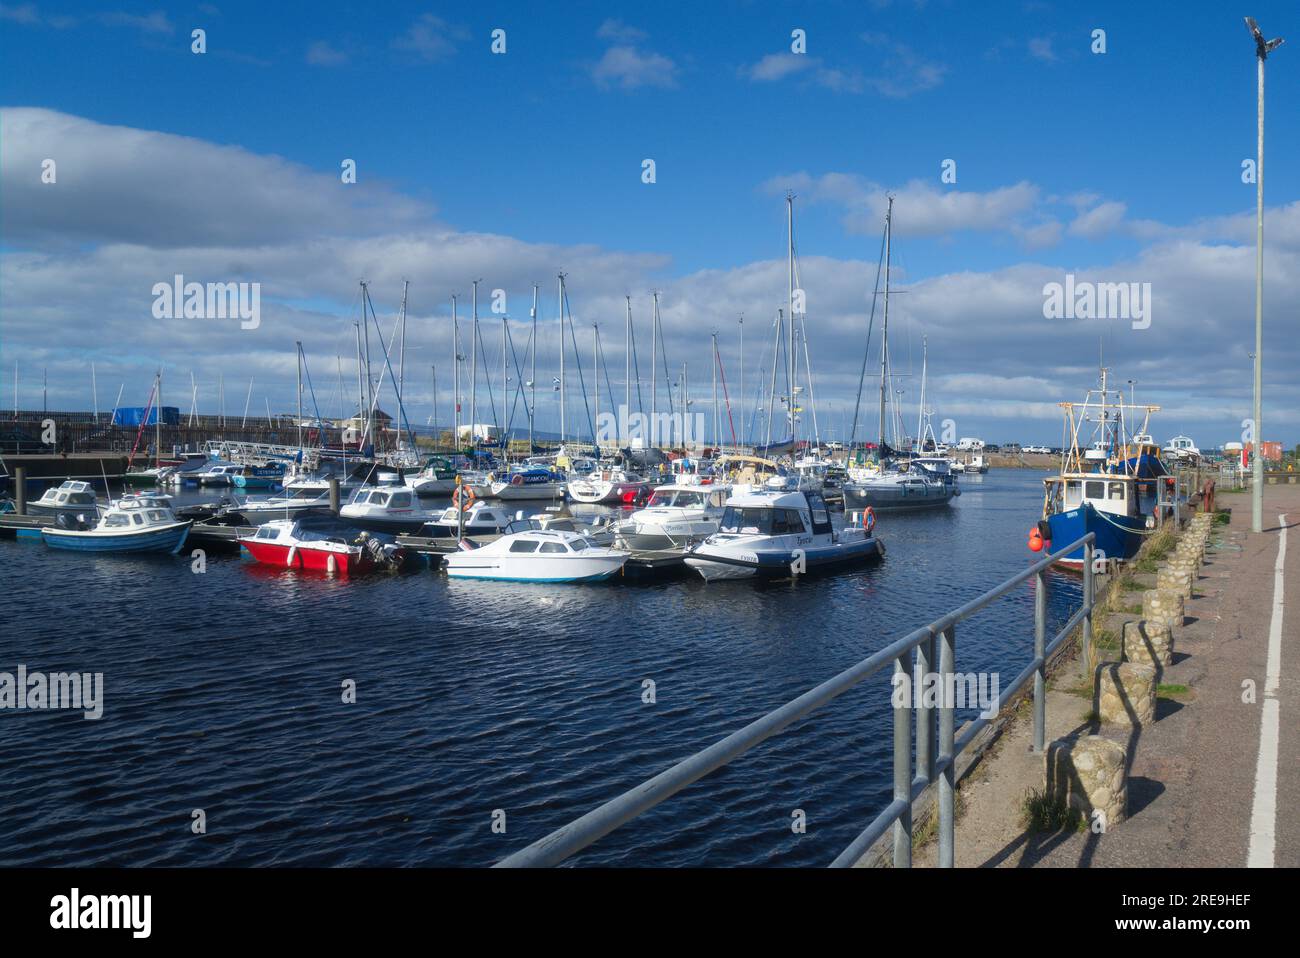 Port de Nairn, marina, bateaux. En regardant vers le nord vers Moray Firth. Belle journée claire ensoleillée avec une grande structure nuageuse. Highland Region, Écosse Banque D'Images